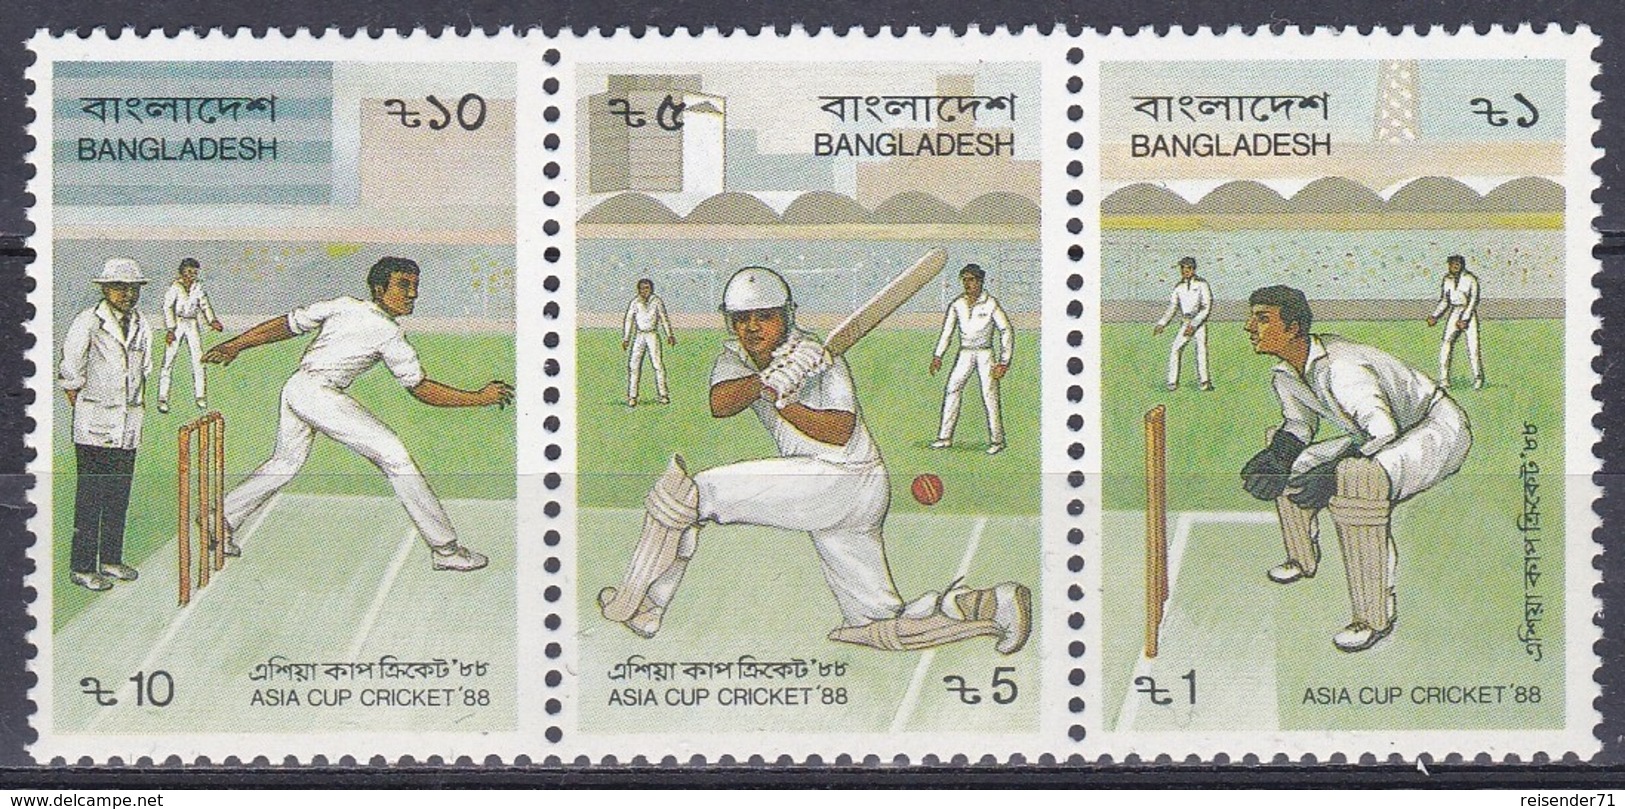 Bangladesch Bangladesh 1988 Sport Spiele Ballspiele Kricket-Asia-Cup Cricket, Mi. 289-1 ** - Bangladesh